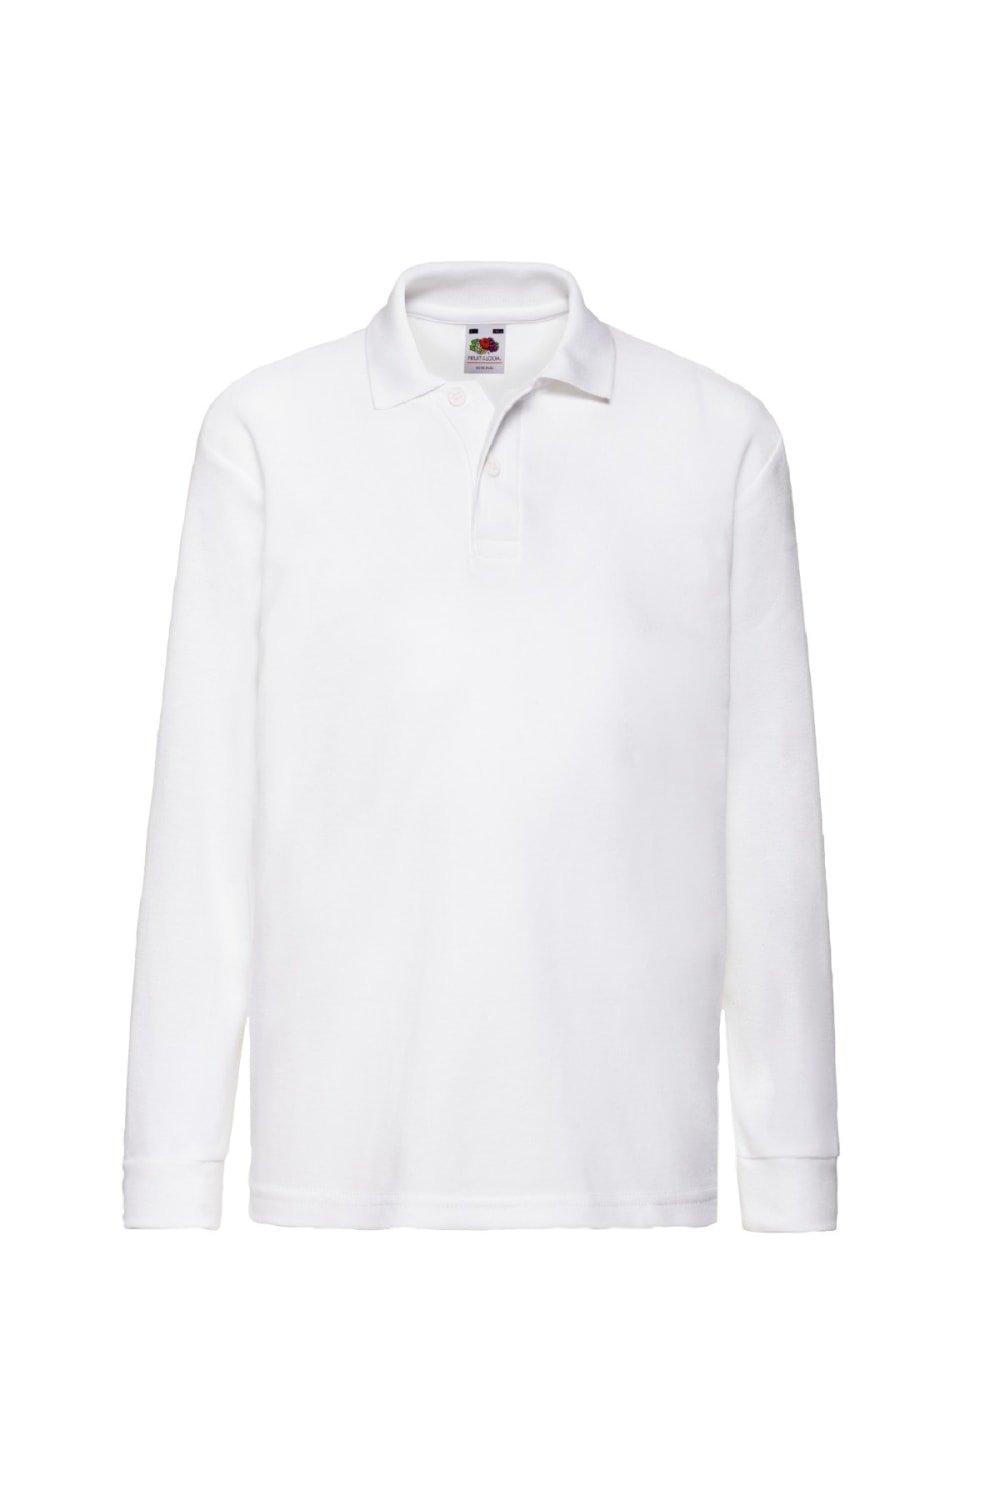 Рубашки-поло/рубашки-поло из пике с длинными рукавами 65/35 Fruit of the Loom, белый